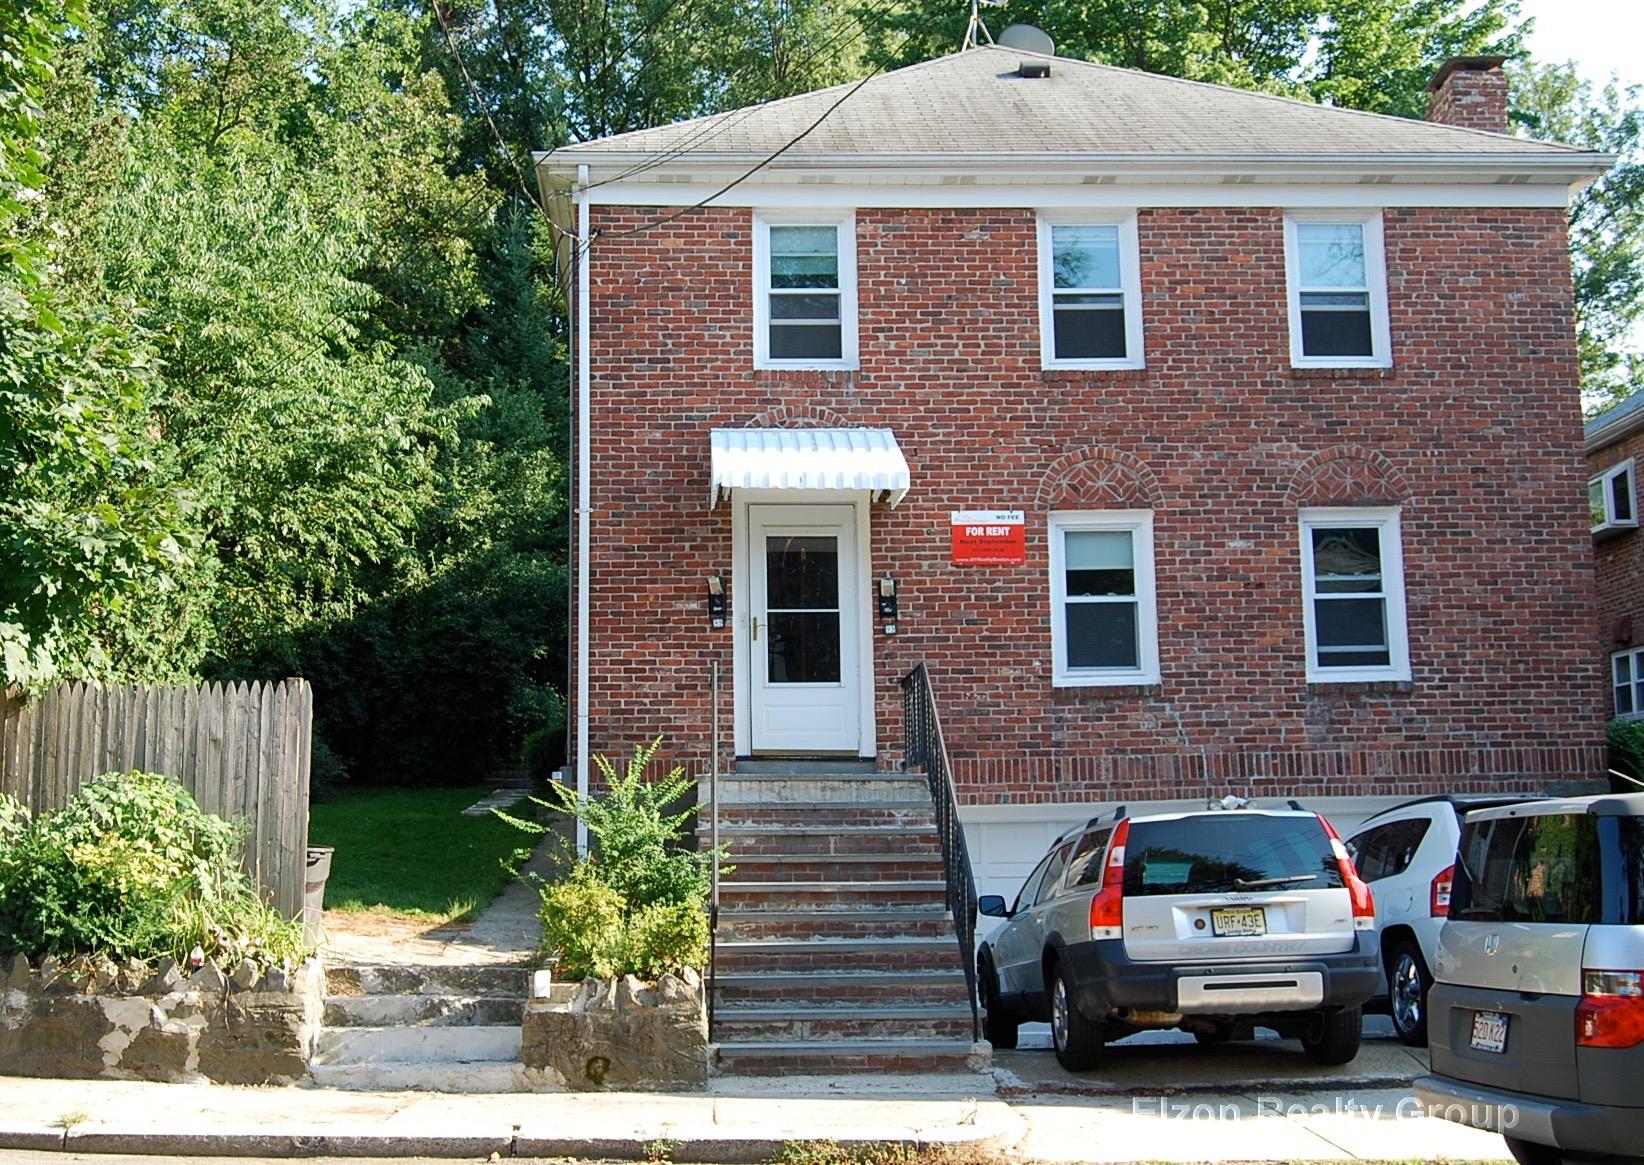 Photos of apartment on Allston St.,Boston MA 02135